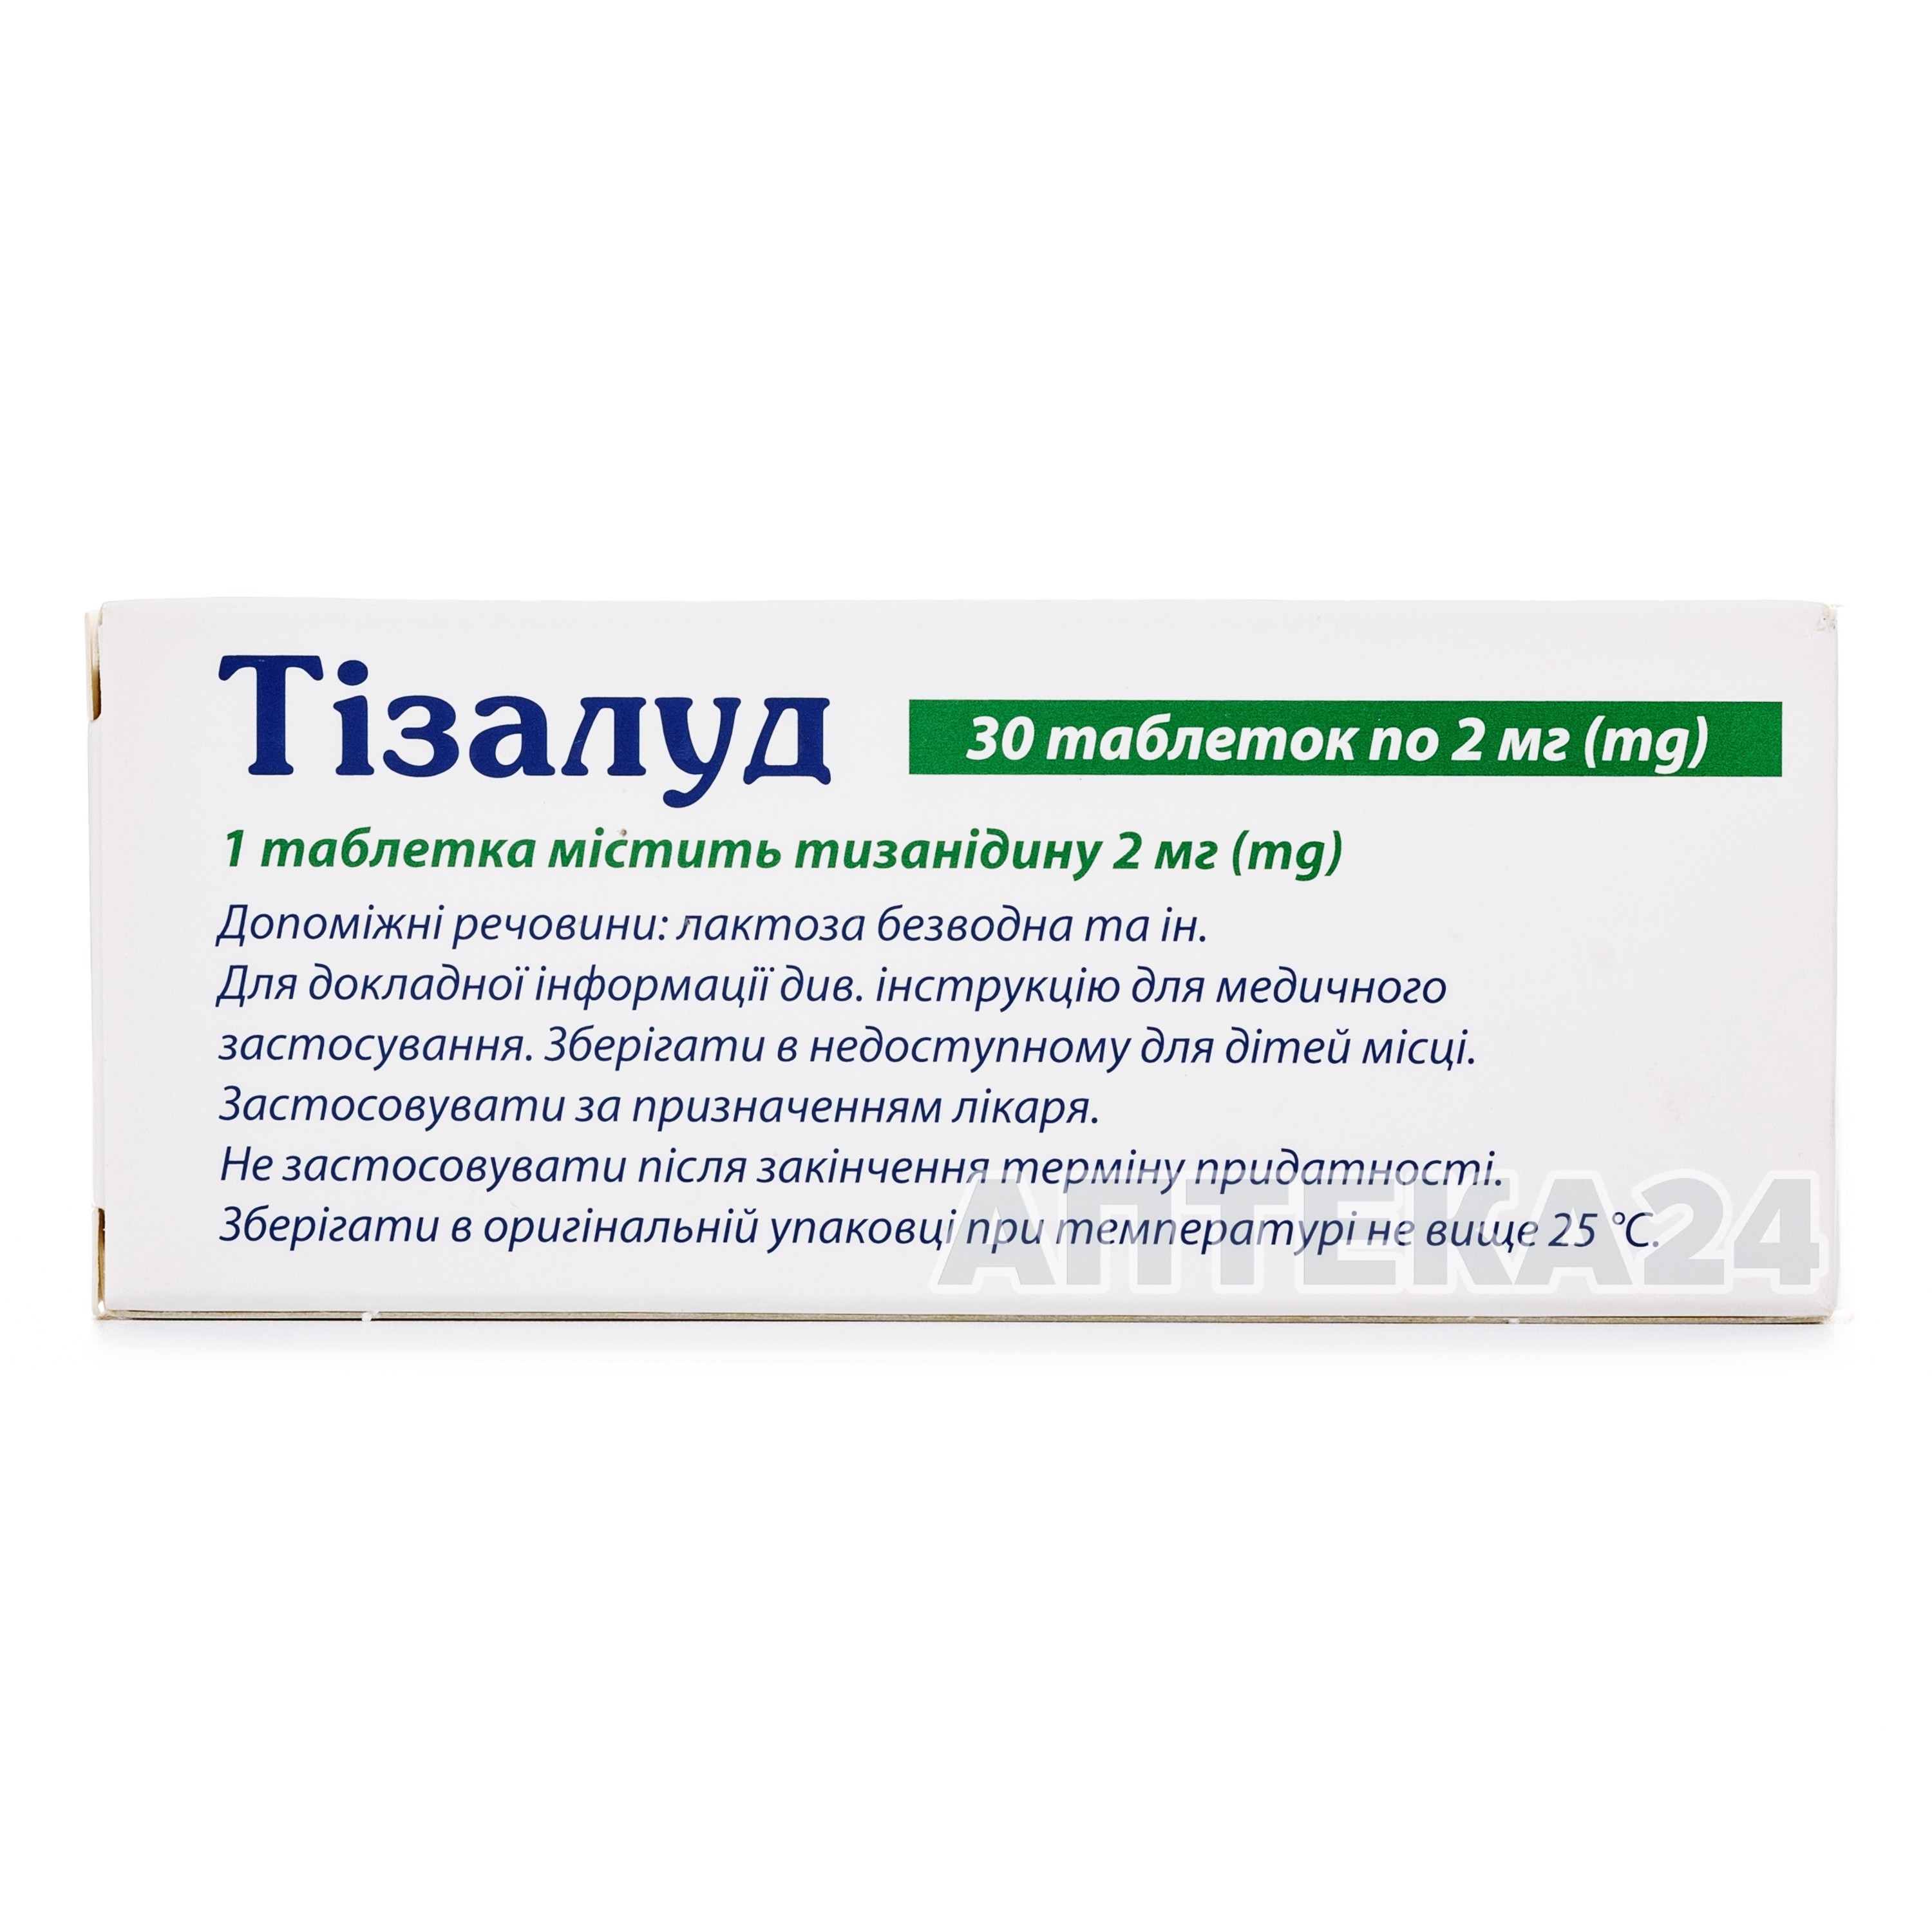 Чесні відгуки про Тізалуд таблетки по 2 мг, 30 шт. - Київський .